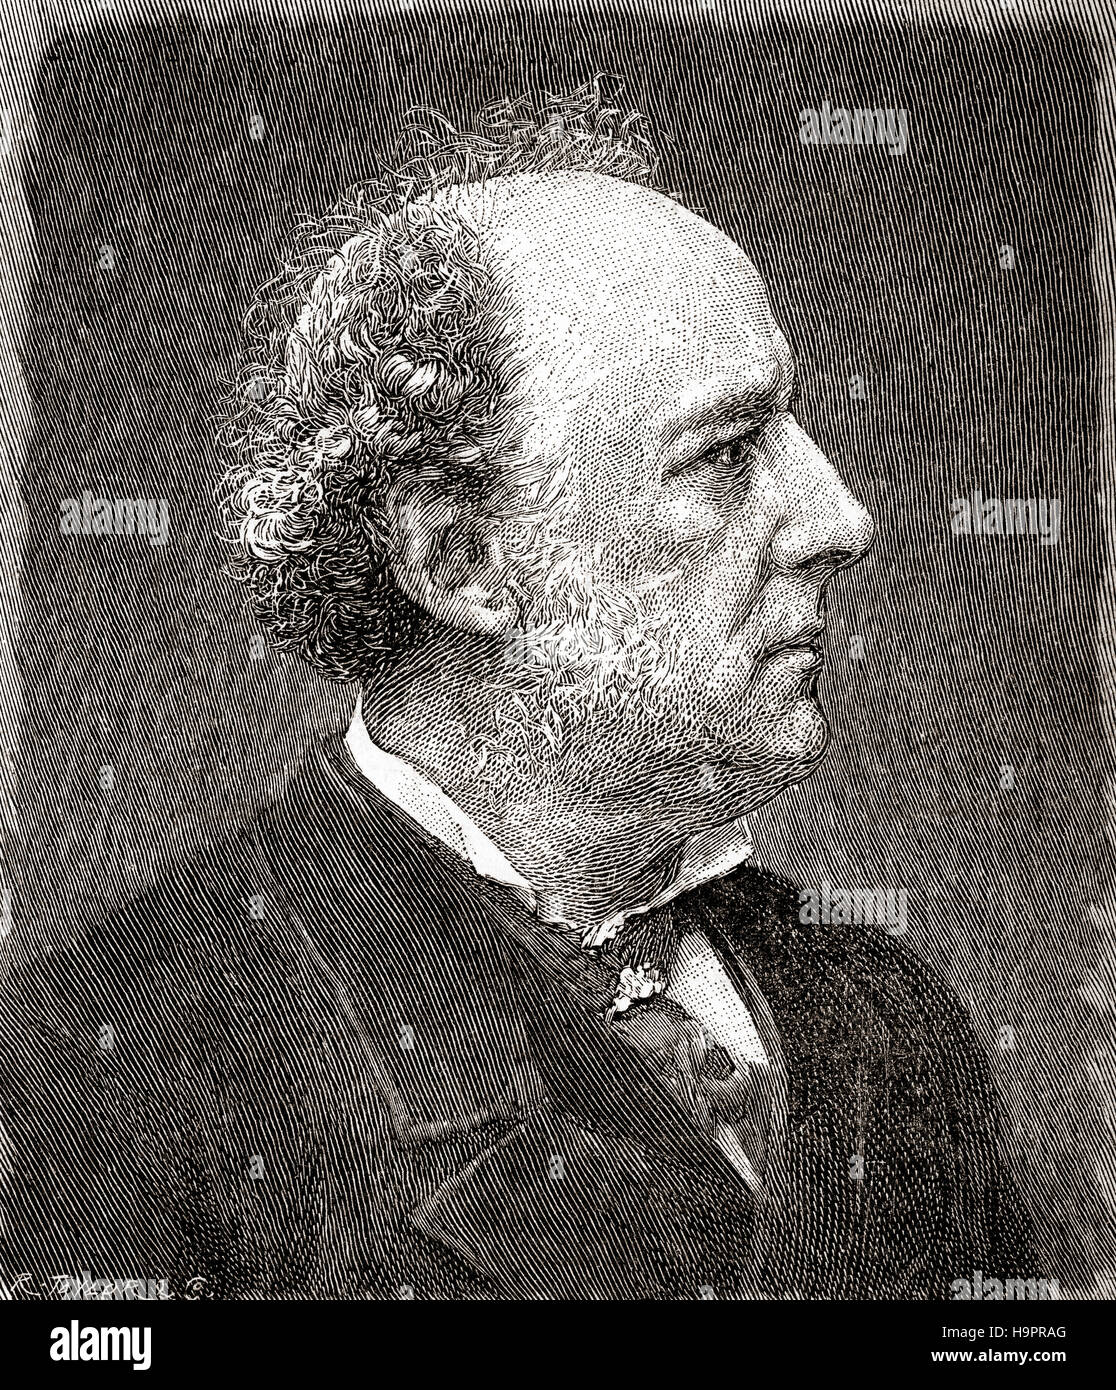 Sir John Everett Millais, 1. Baronet, 1829 – 1896.  Englischer Maler und Illustrator, einer der Gründer der Präraffaeliten. Hier im Alter von 62 gesehen.  Aus dem Strand Magazine, Vol I Januar bis Juni 1891. Stockfoto